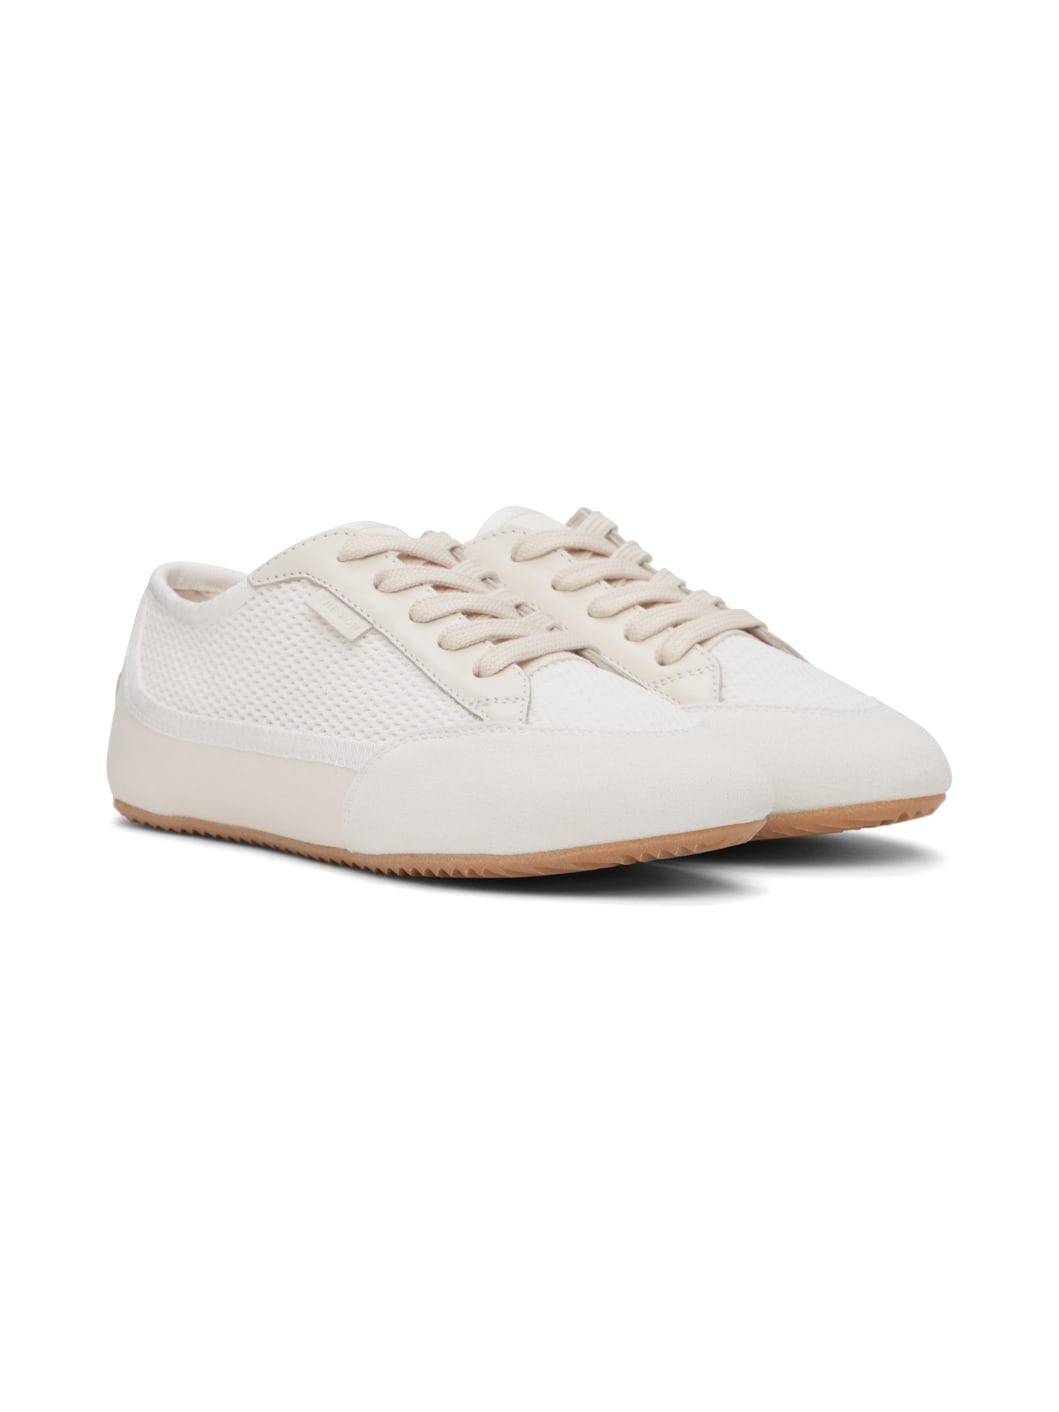 Off-White & White Bonnie Sneakers - 4